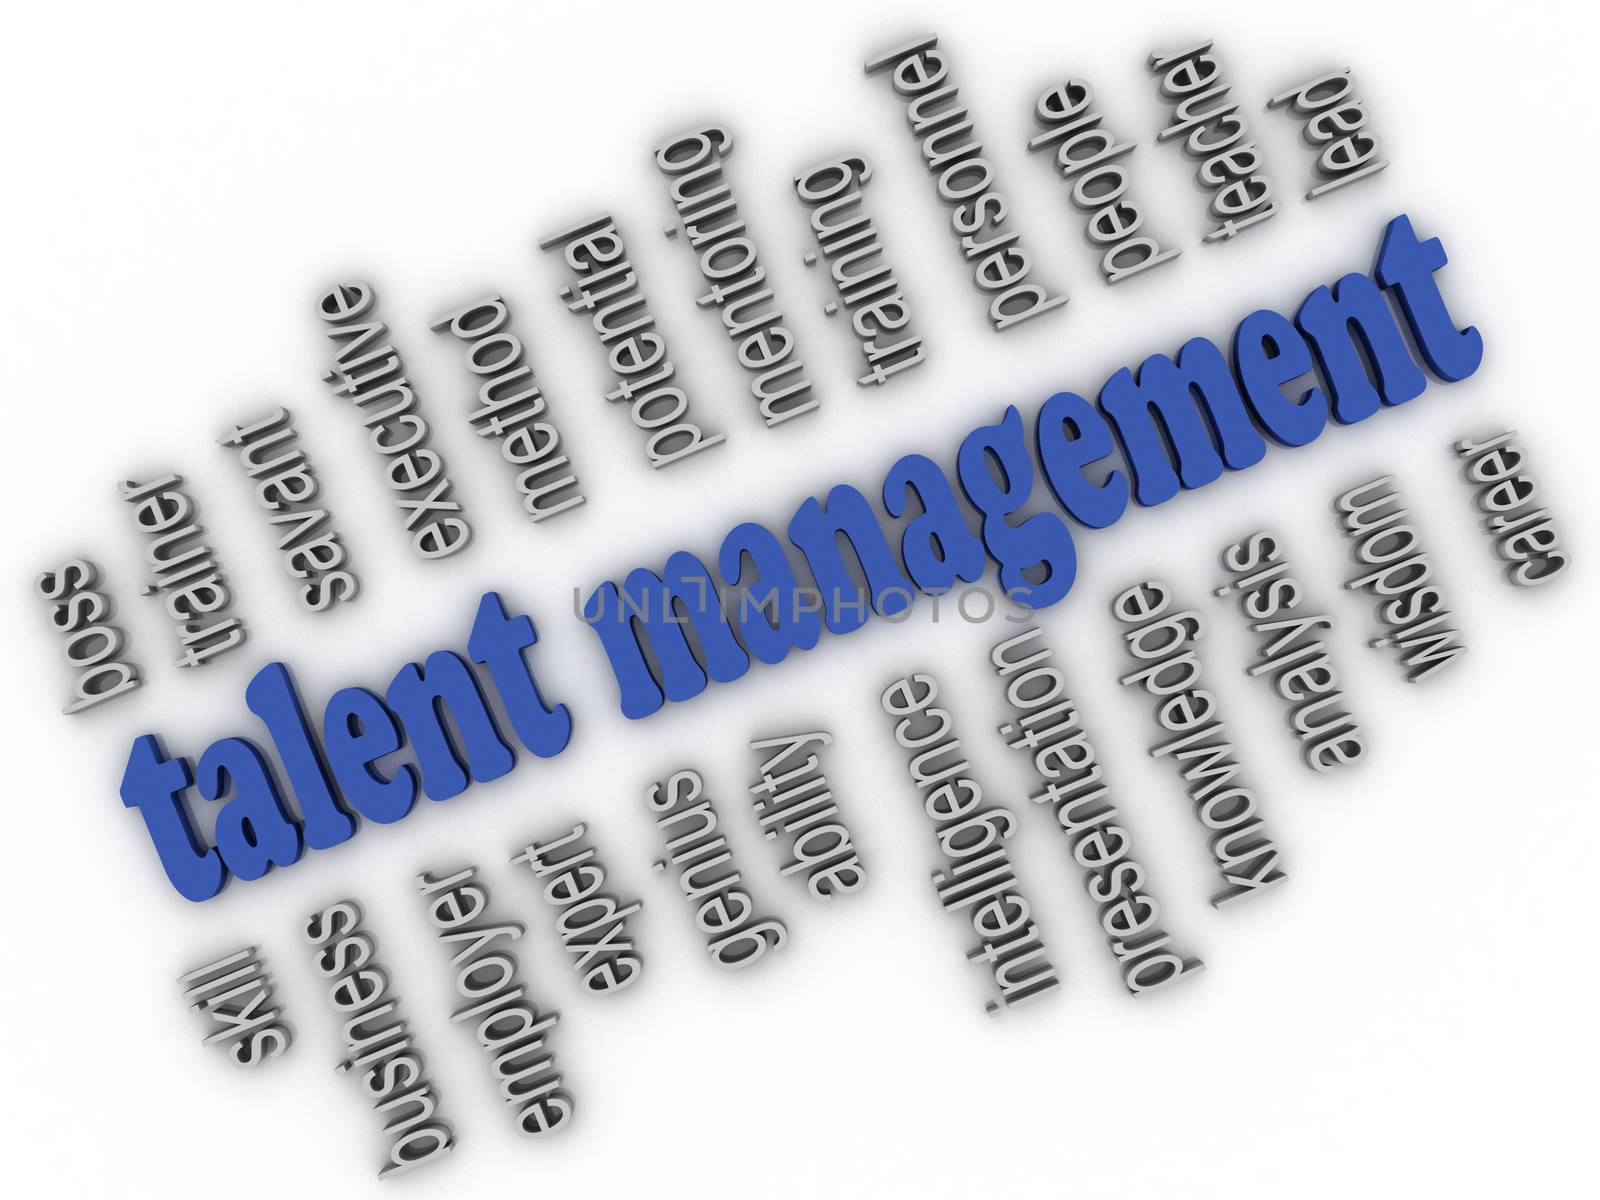 3d imagen Talent Management concept word cloud background by dacasdo